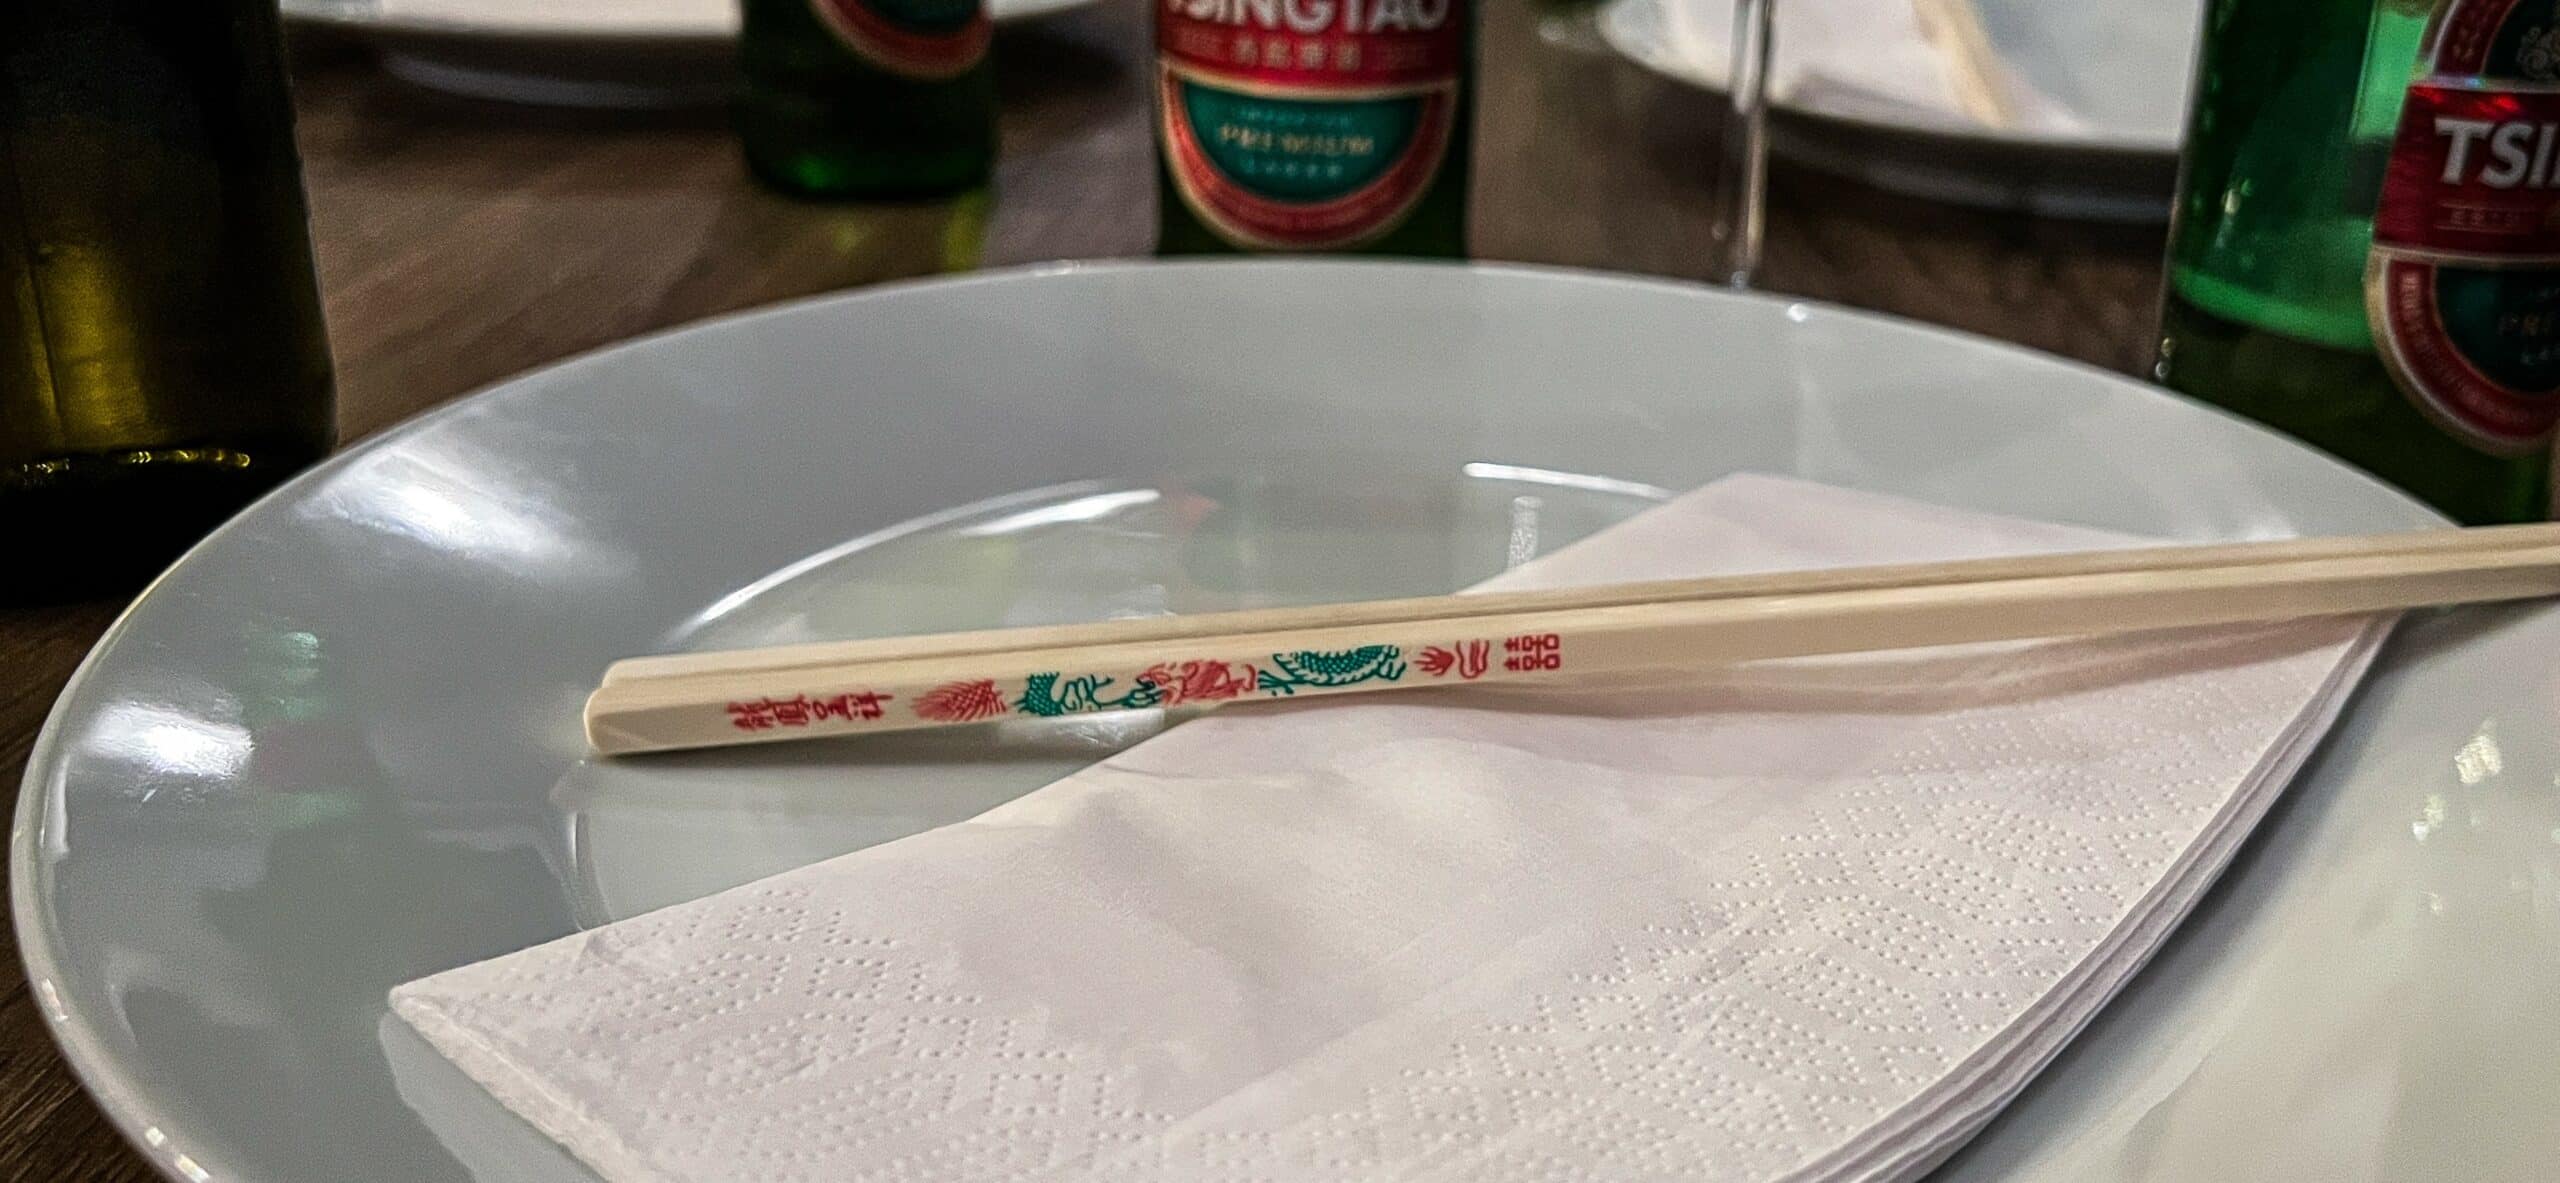 spisepinner, szechuan chengdu restaurant